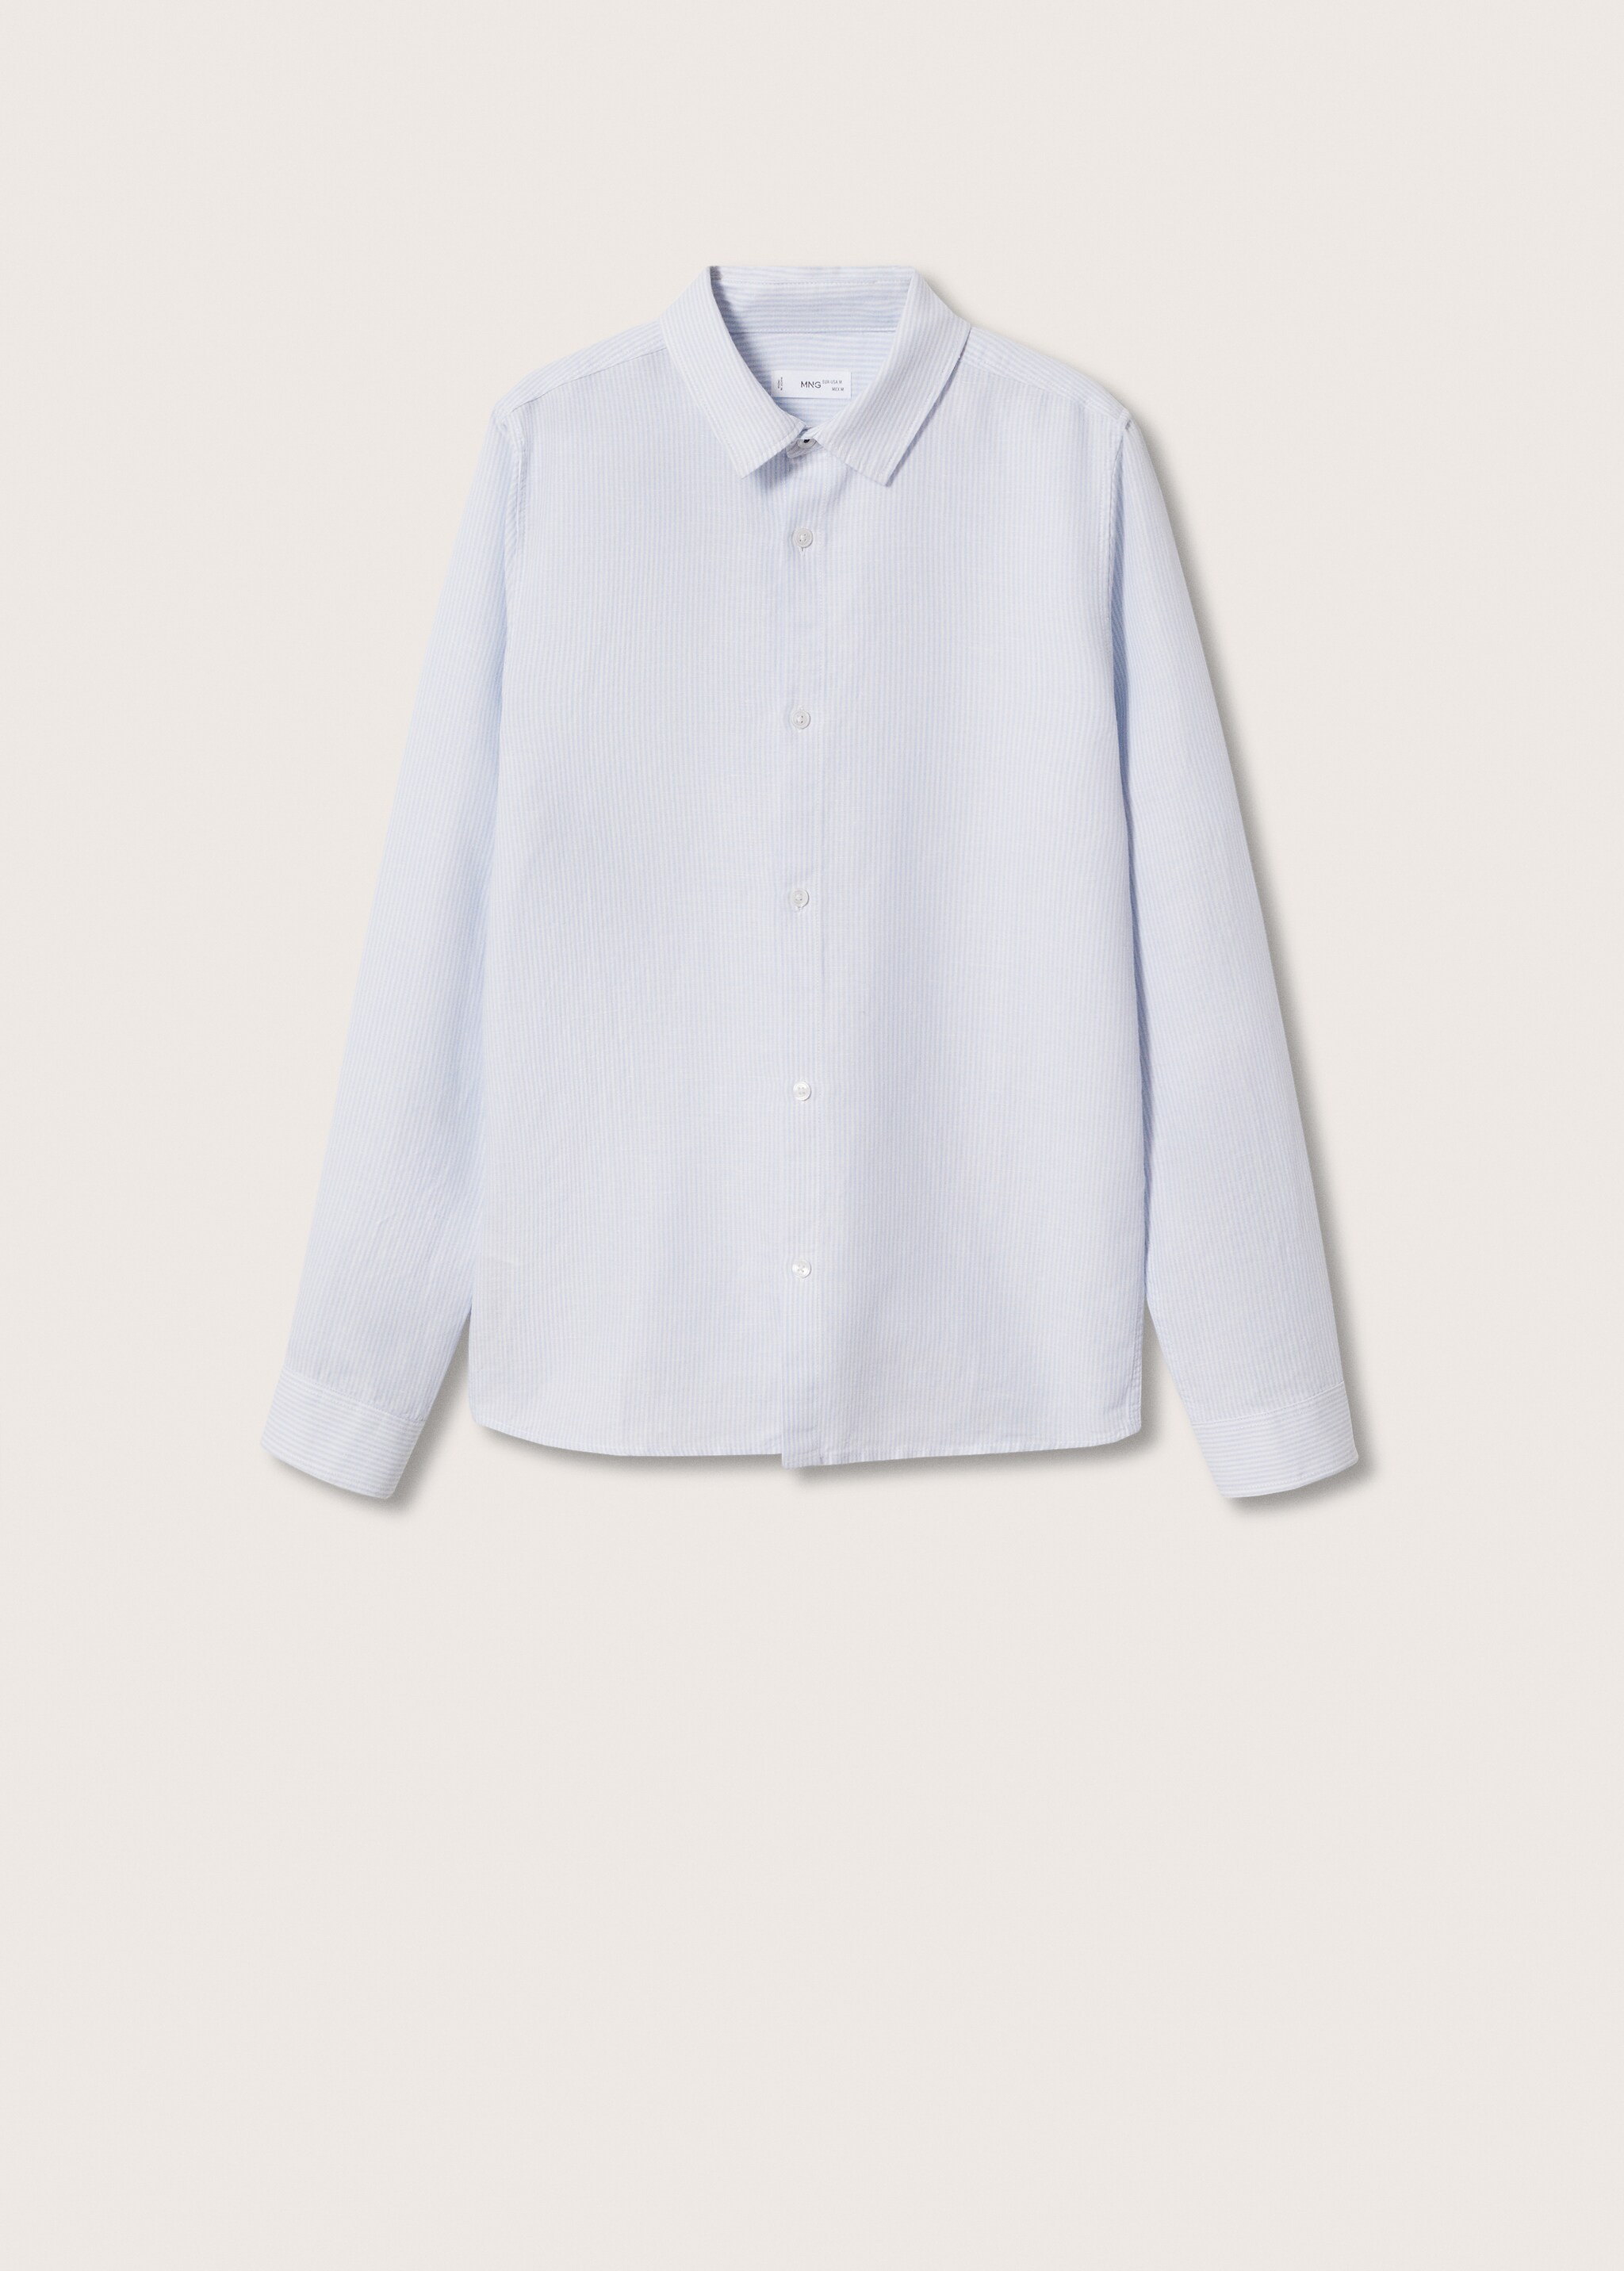 Camisa algodón lino rayas  - Artículo sin modelo